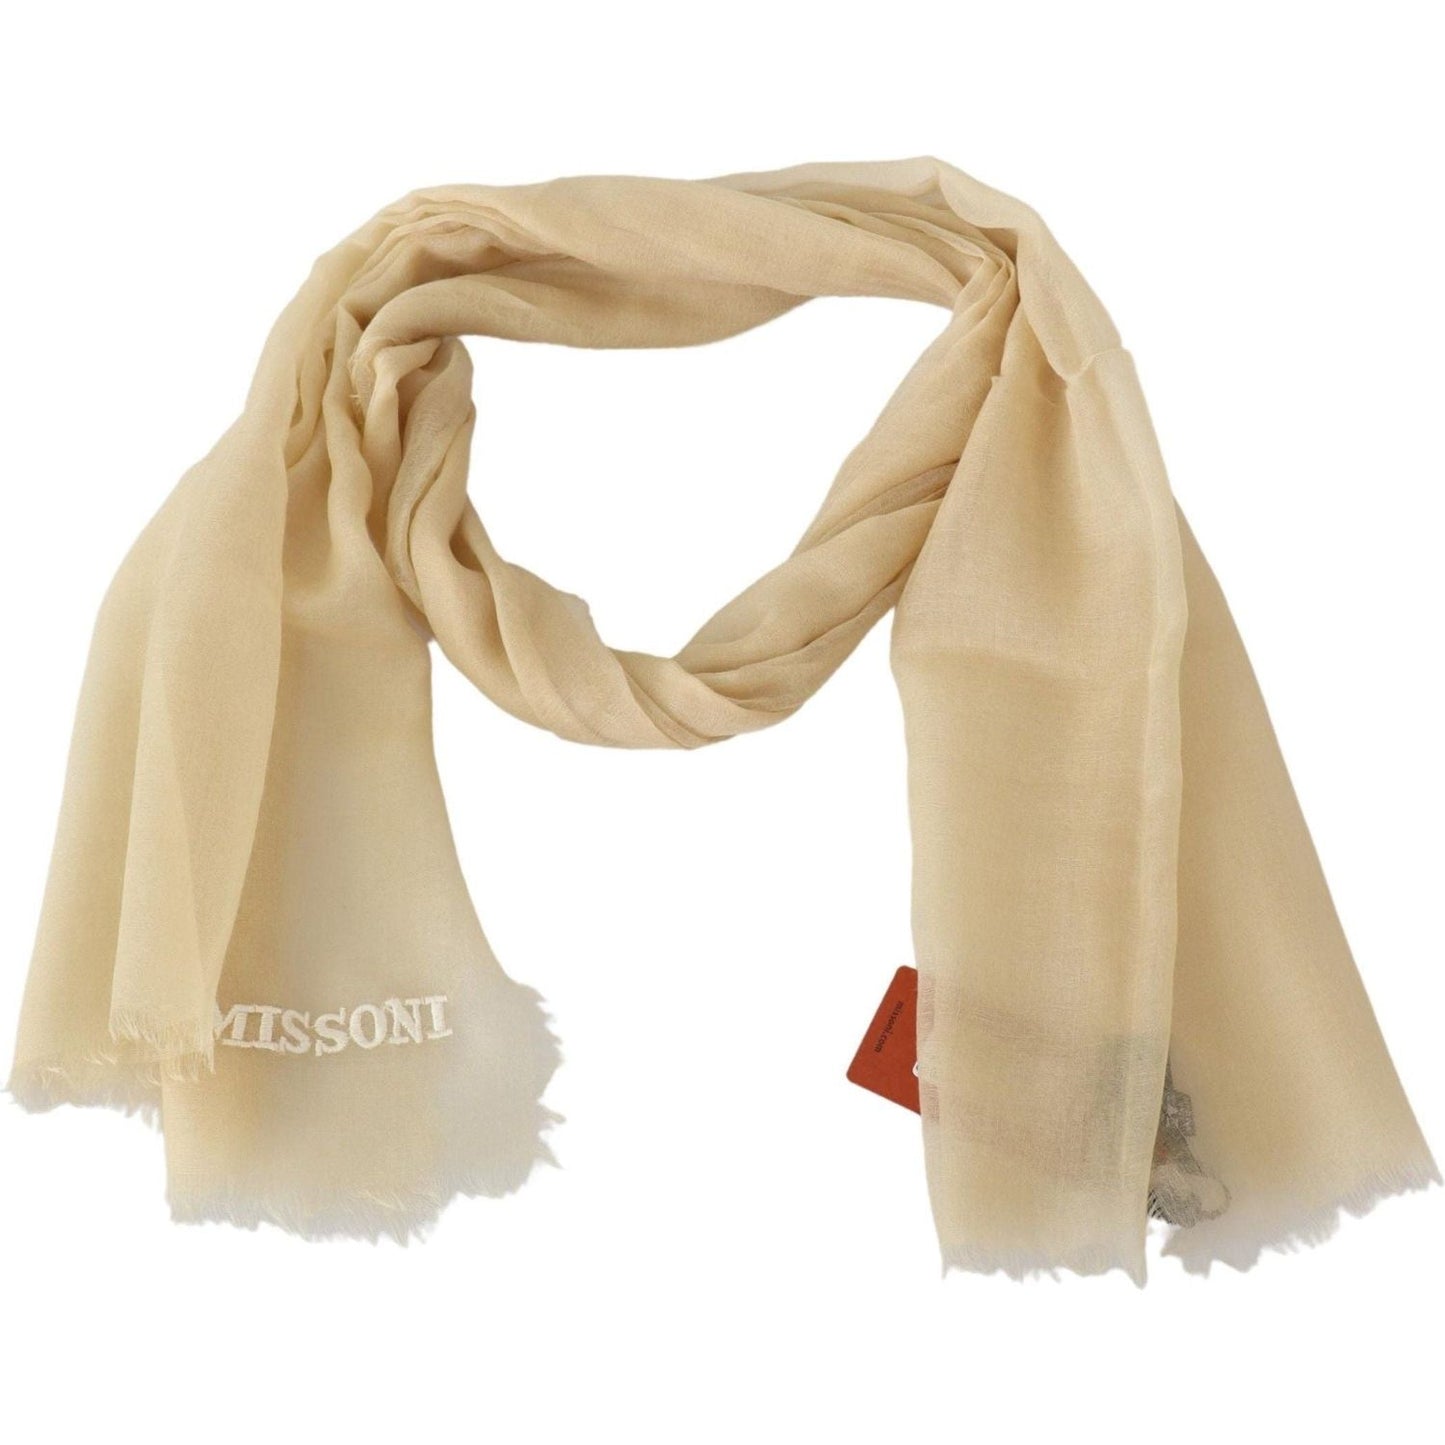 Missoni Elegant Cashmere Scarf in Beige beige-cashmere-unisex-neck-scarf